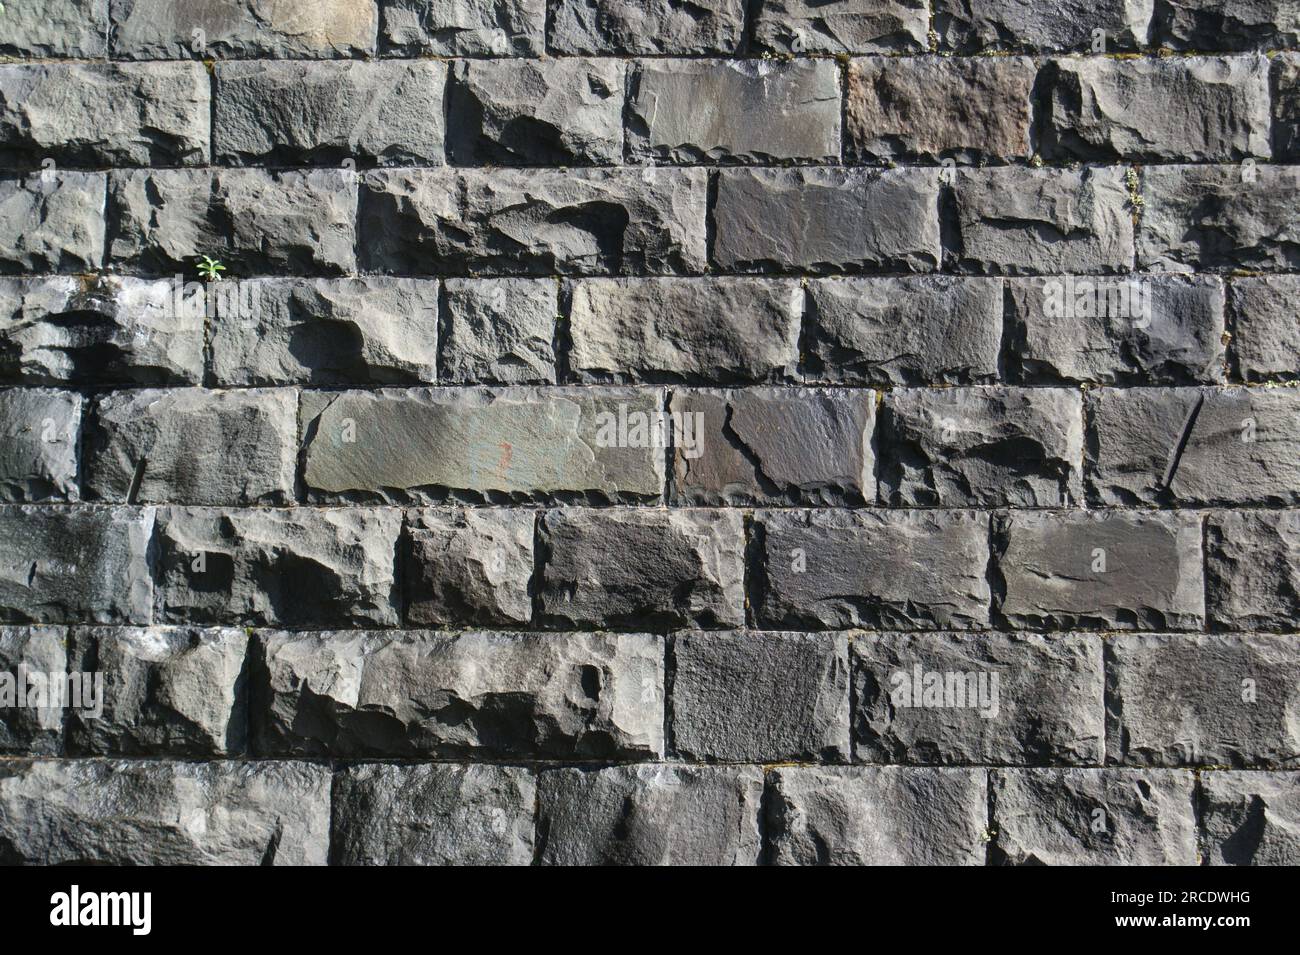 Vieux mur de blocs de pierre brute. Image en noir et blanc. Banque D'Images